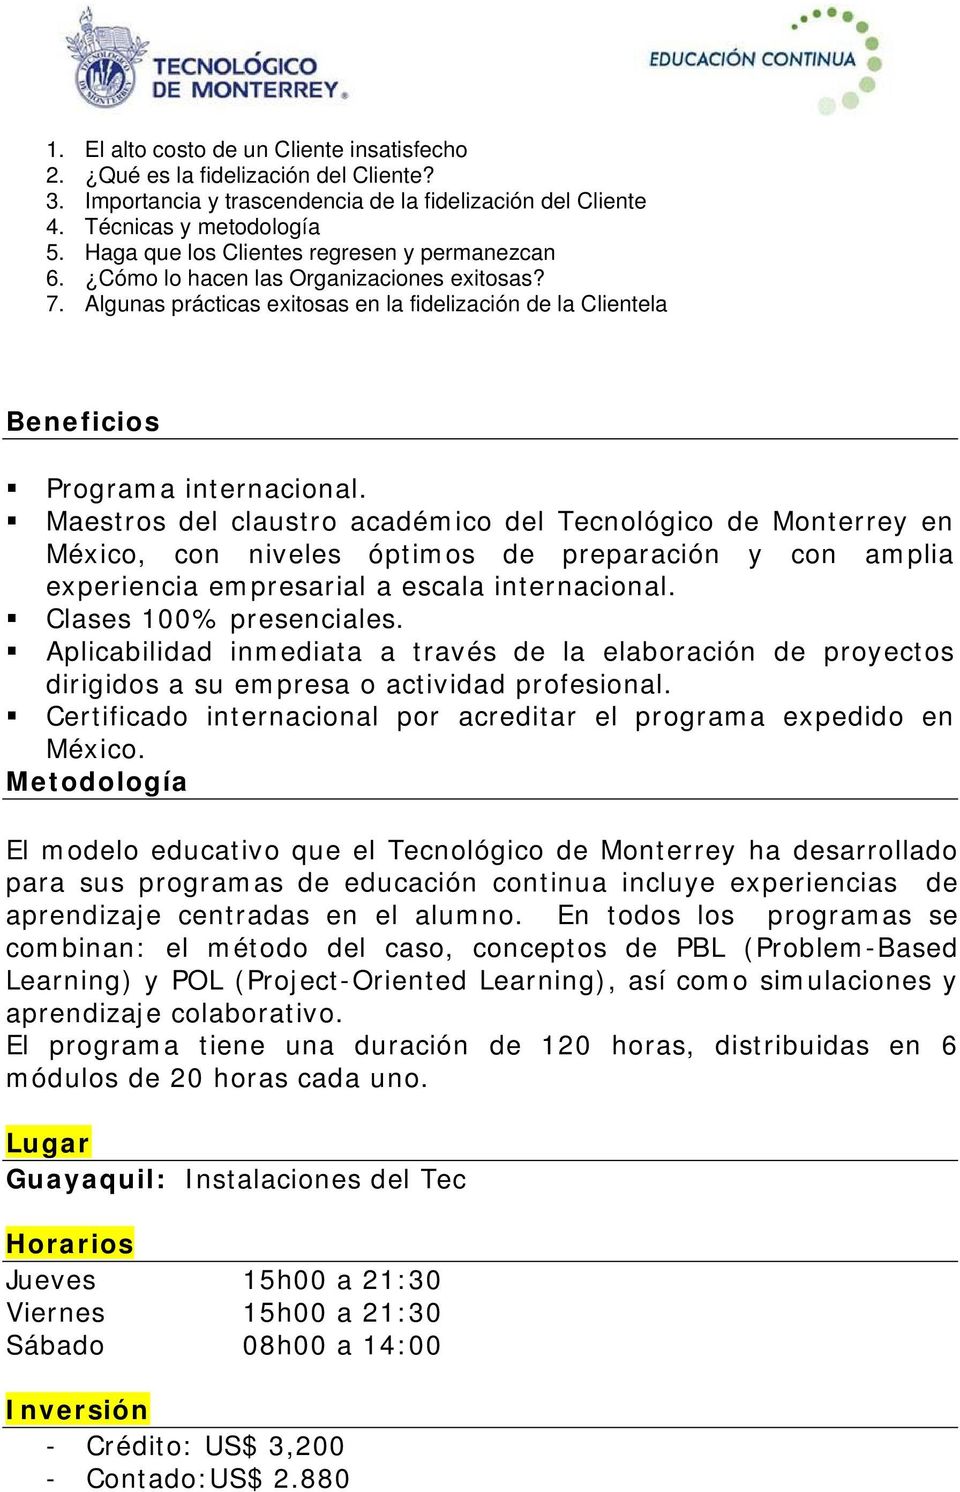 Maestros del claustro académico del Tecnológico de Monterrey en México, con niveles óptimos de preparación y con amplia experiencia empresarial a escala internacional. Clases 100% presenciales.